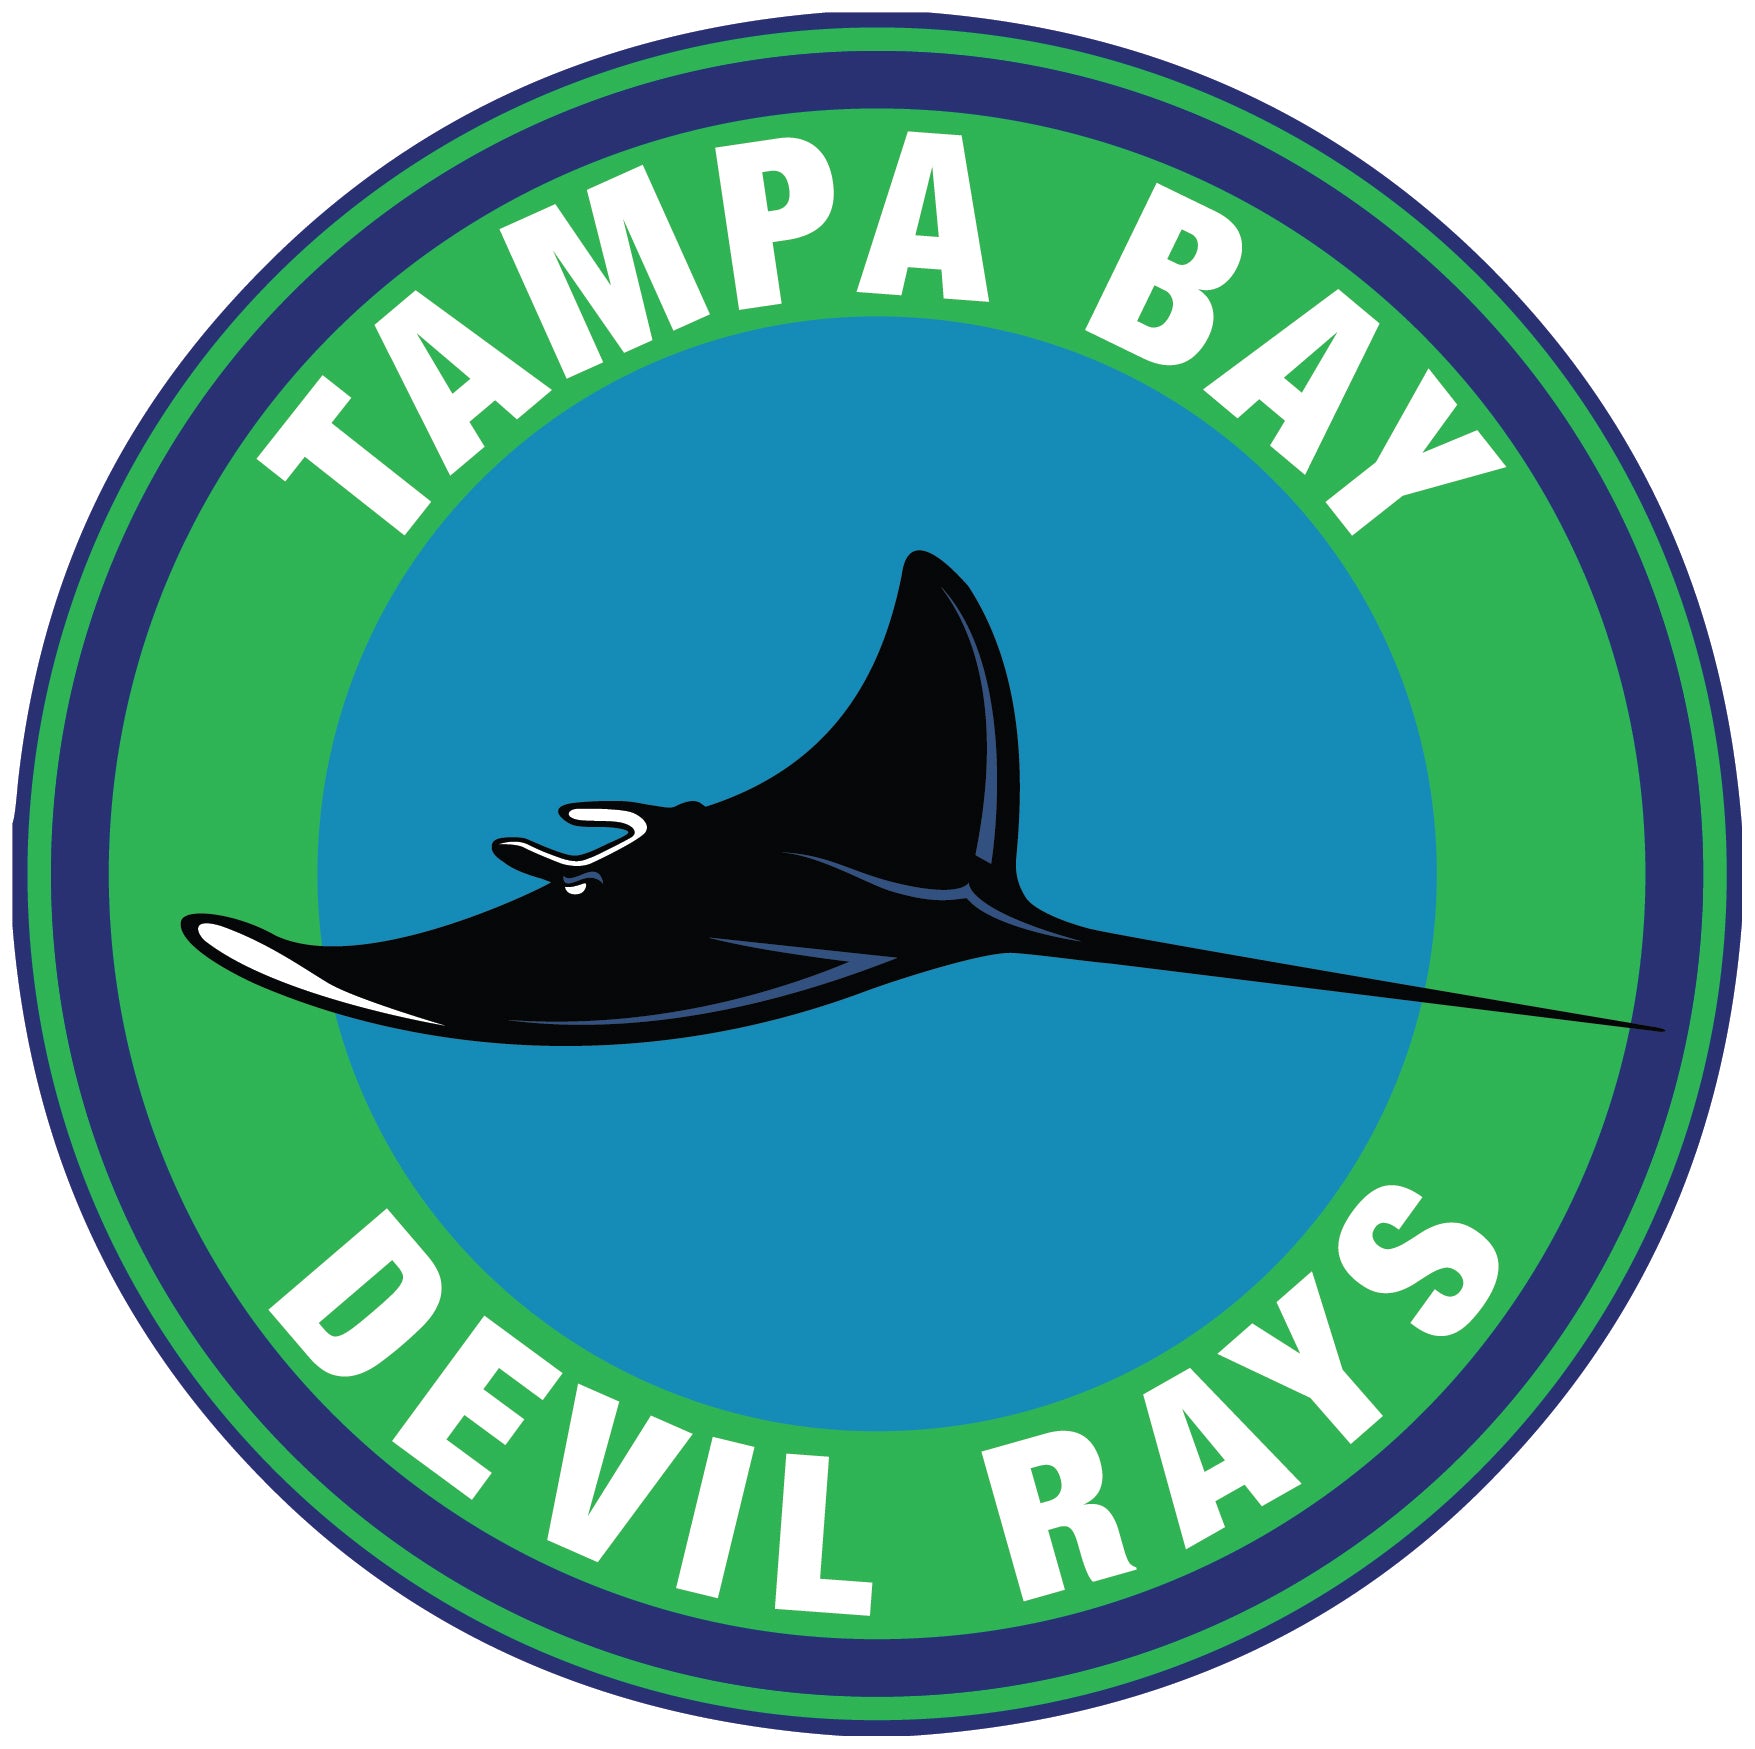 Tampa Bay Rays Throwback logo Circle Logo Vinyl Decal Sticker 5